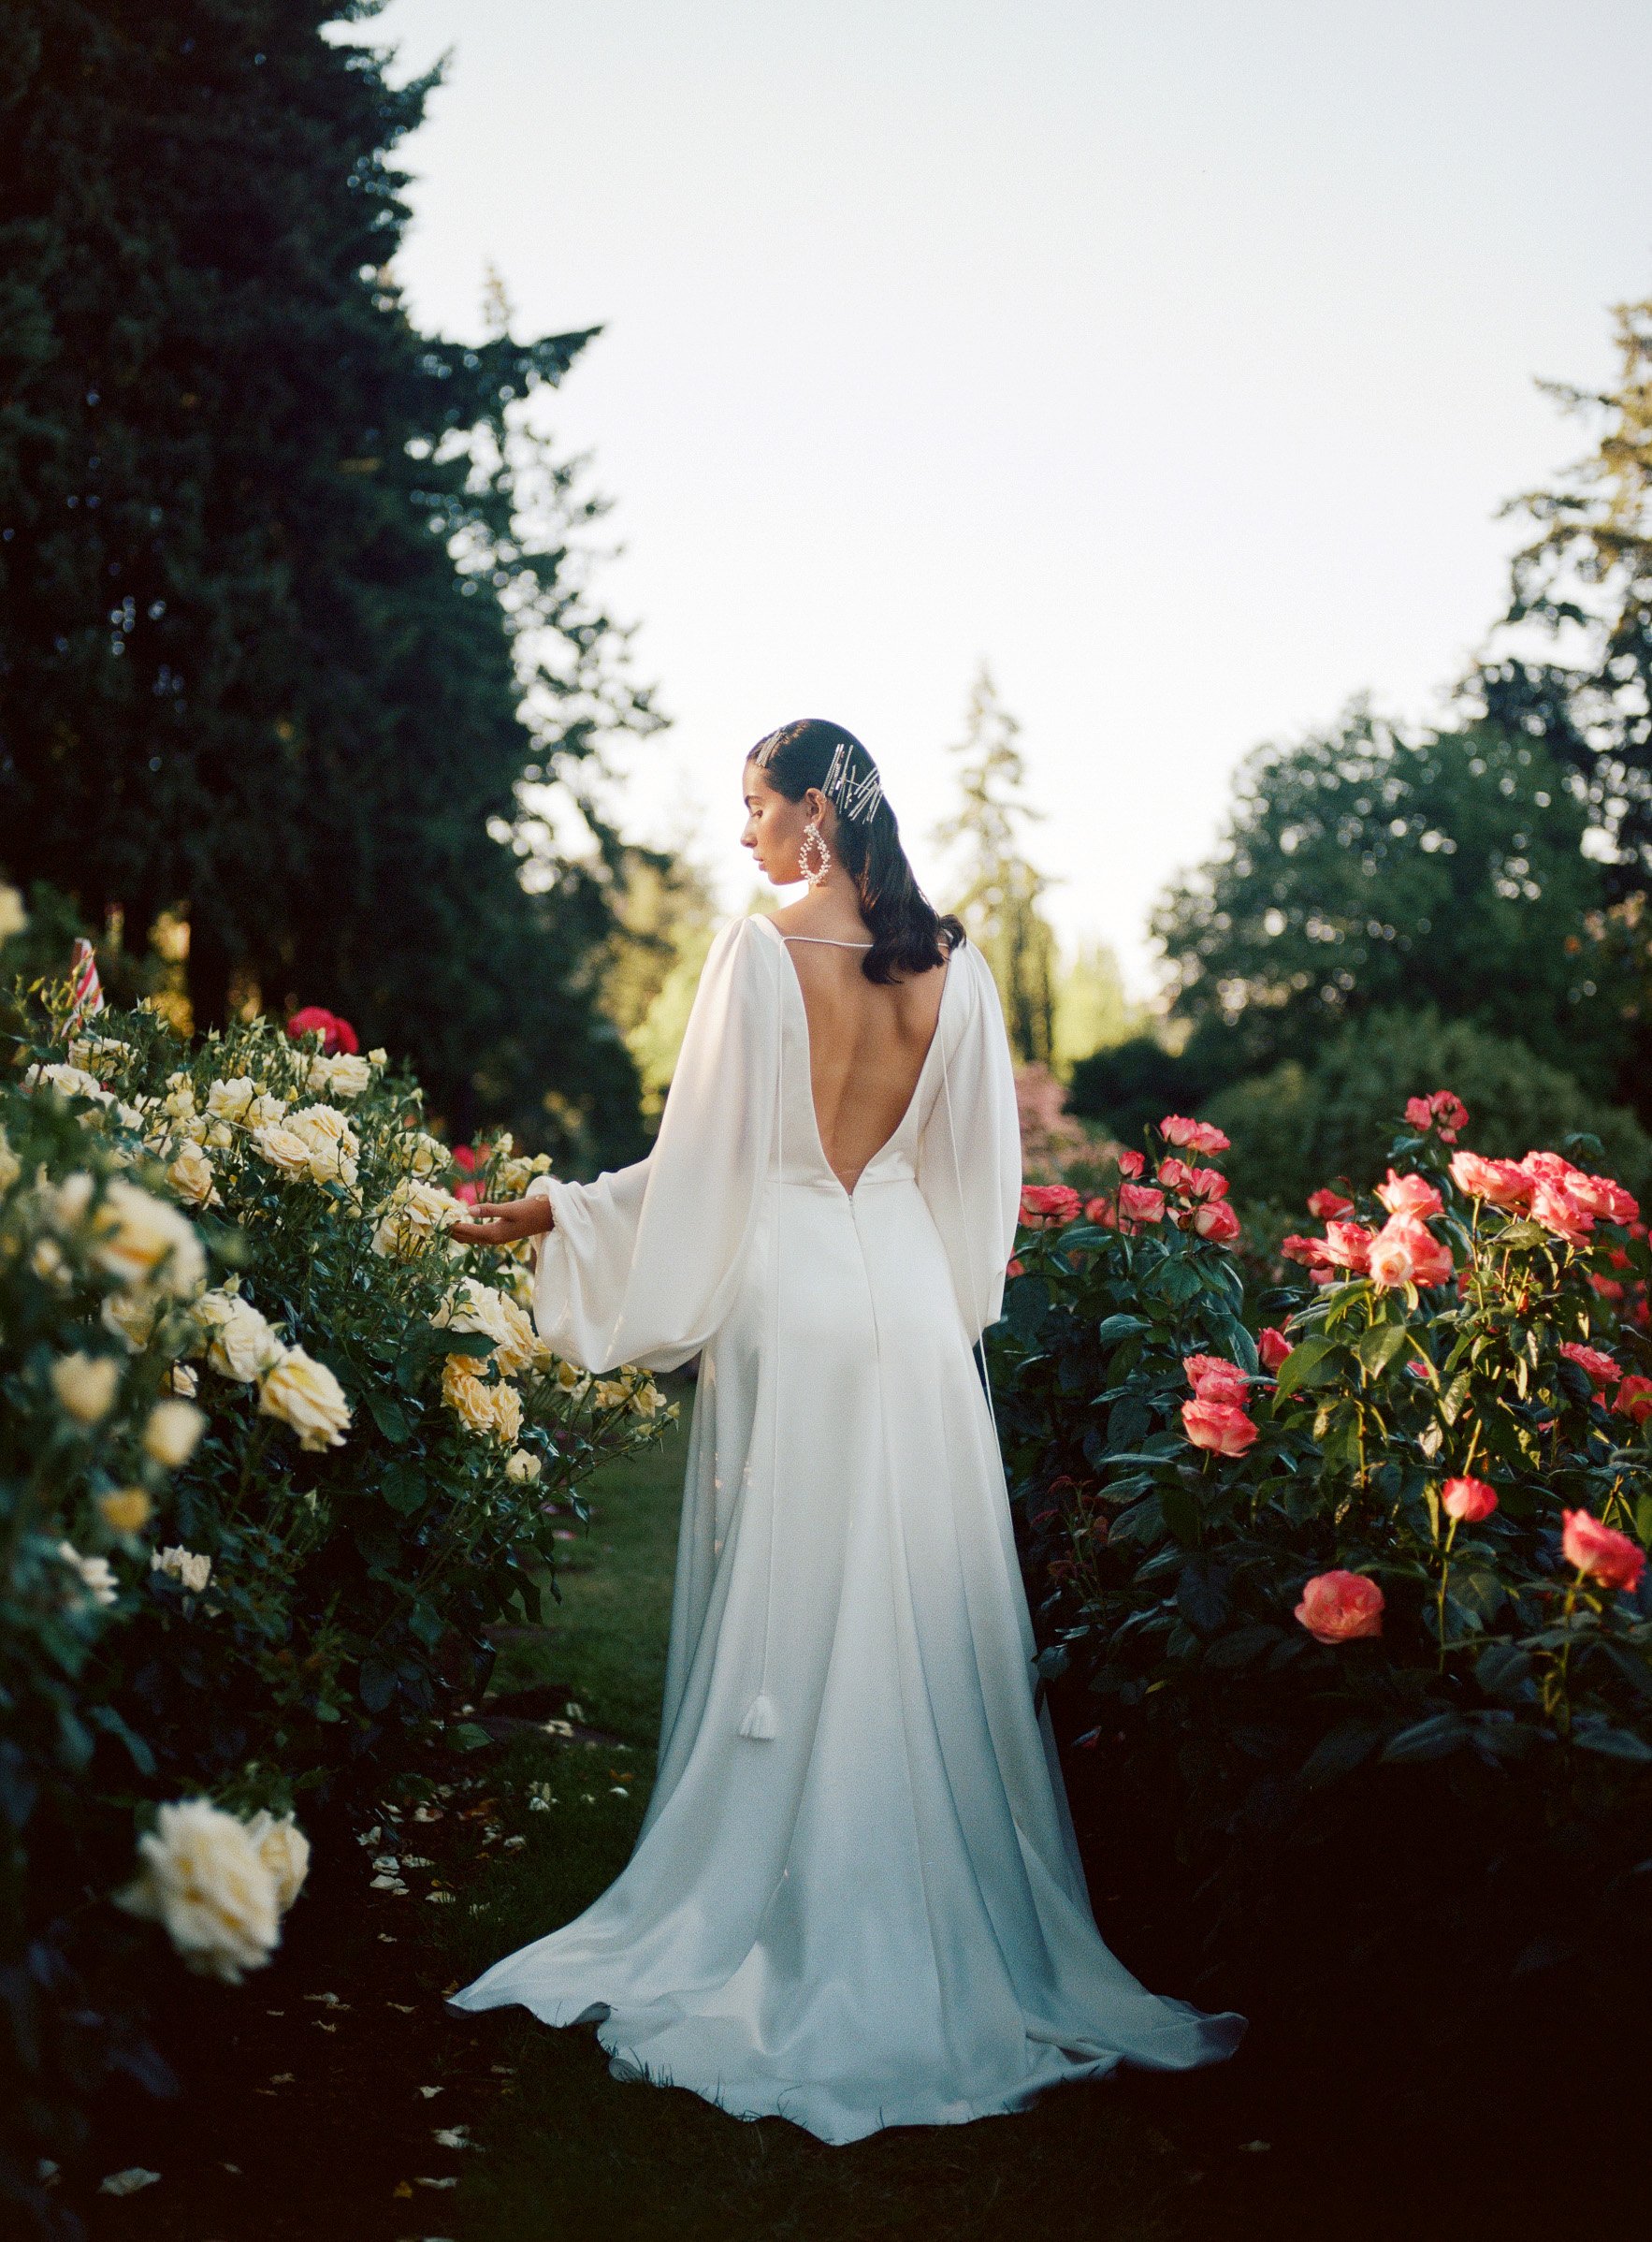 outdoor wedding dress